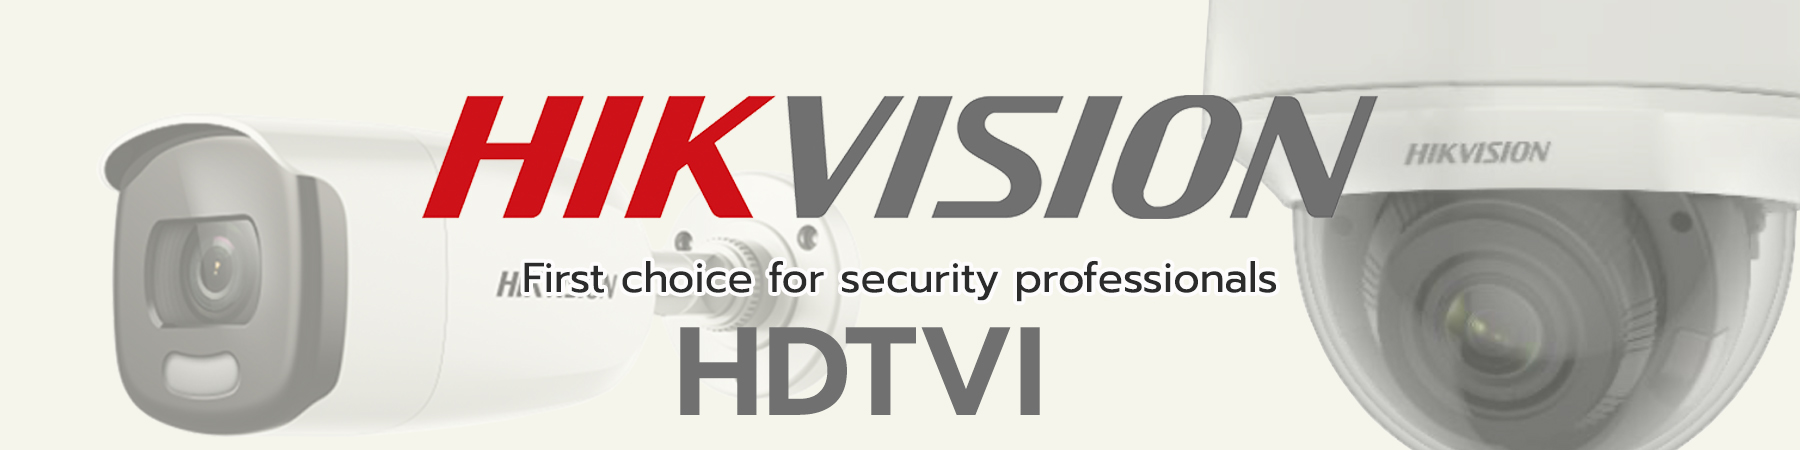 กล้องวงจรปิด Hikvision HDTVI,กล้อง Hikvision,Hikvision 2MP,Hikvision 5MP,Hikvision 8MP,Hikvision ColorVu,Hikvision Ultra Low Light,Hikvision Built-in Mic